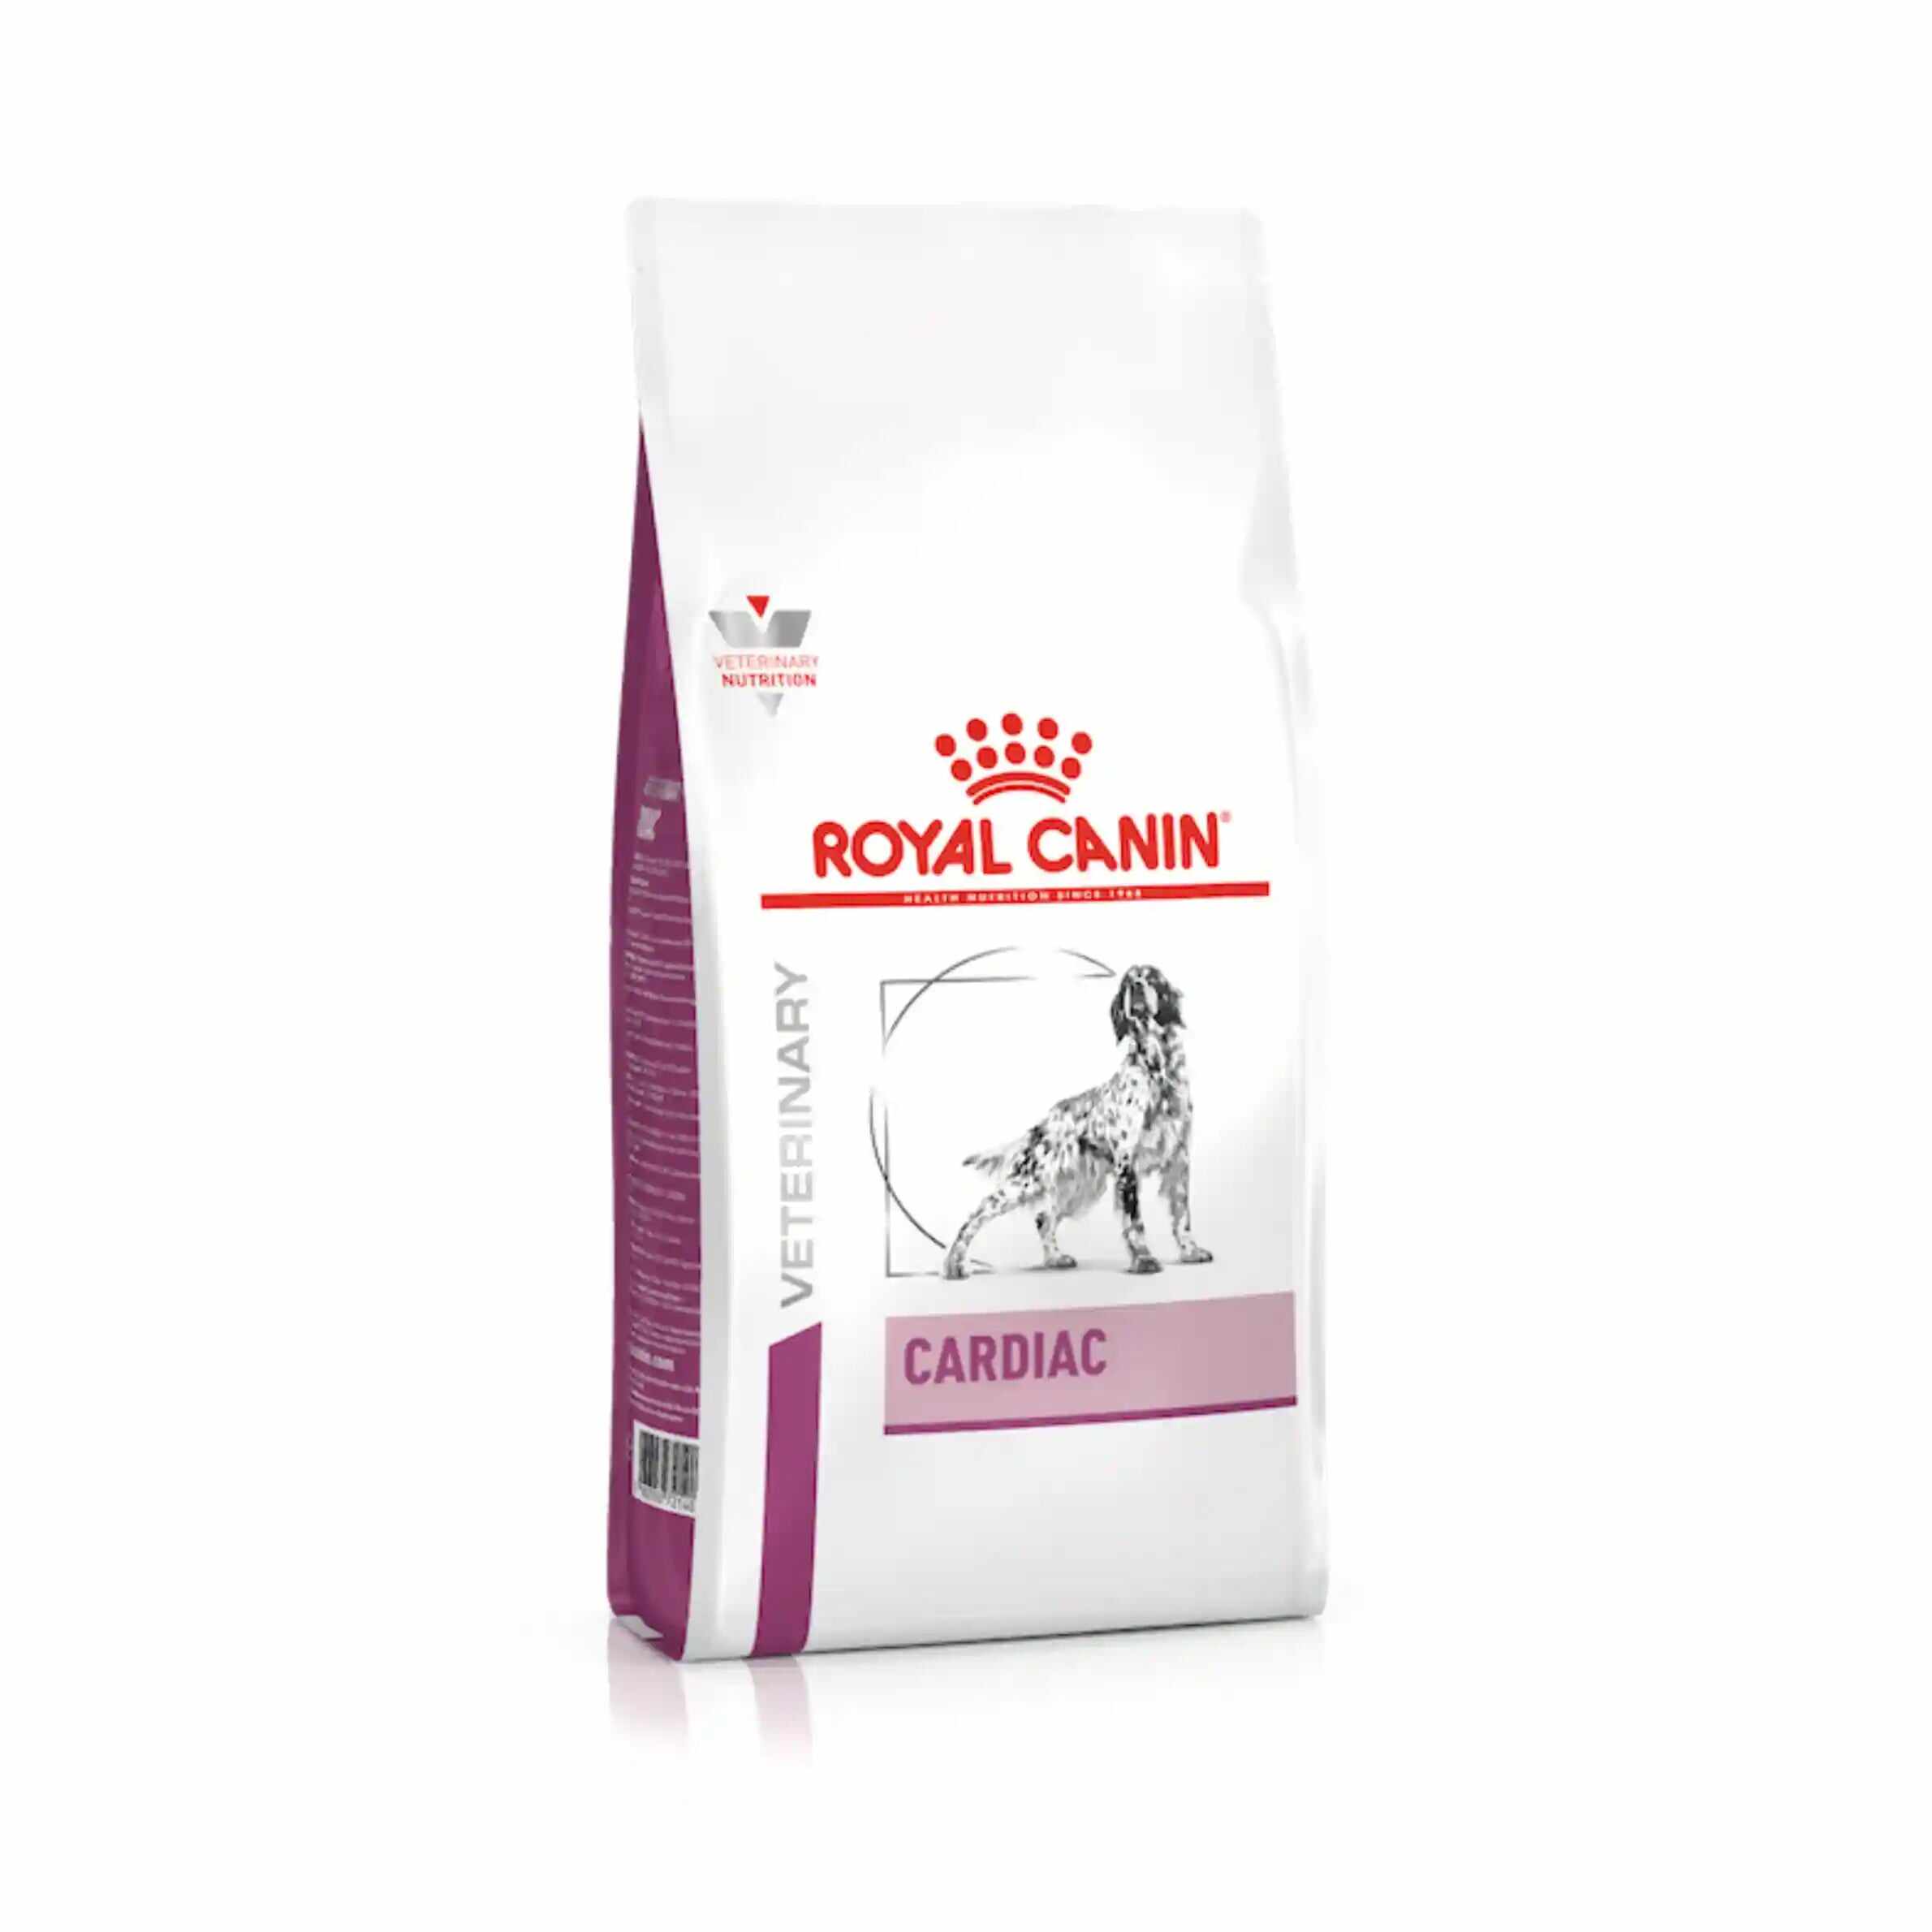 Royal Canin - Canine Cardiac 2kg